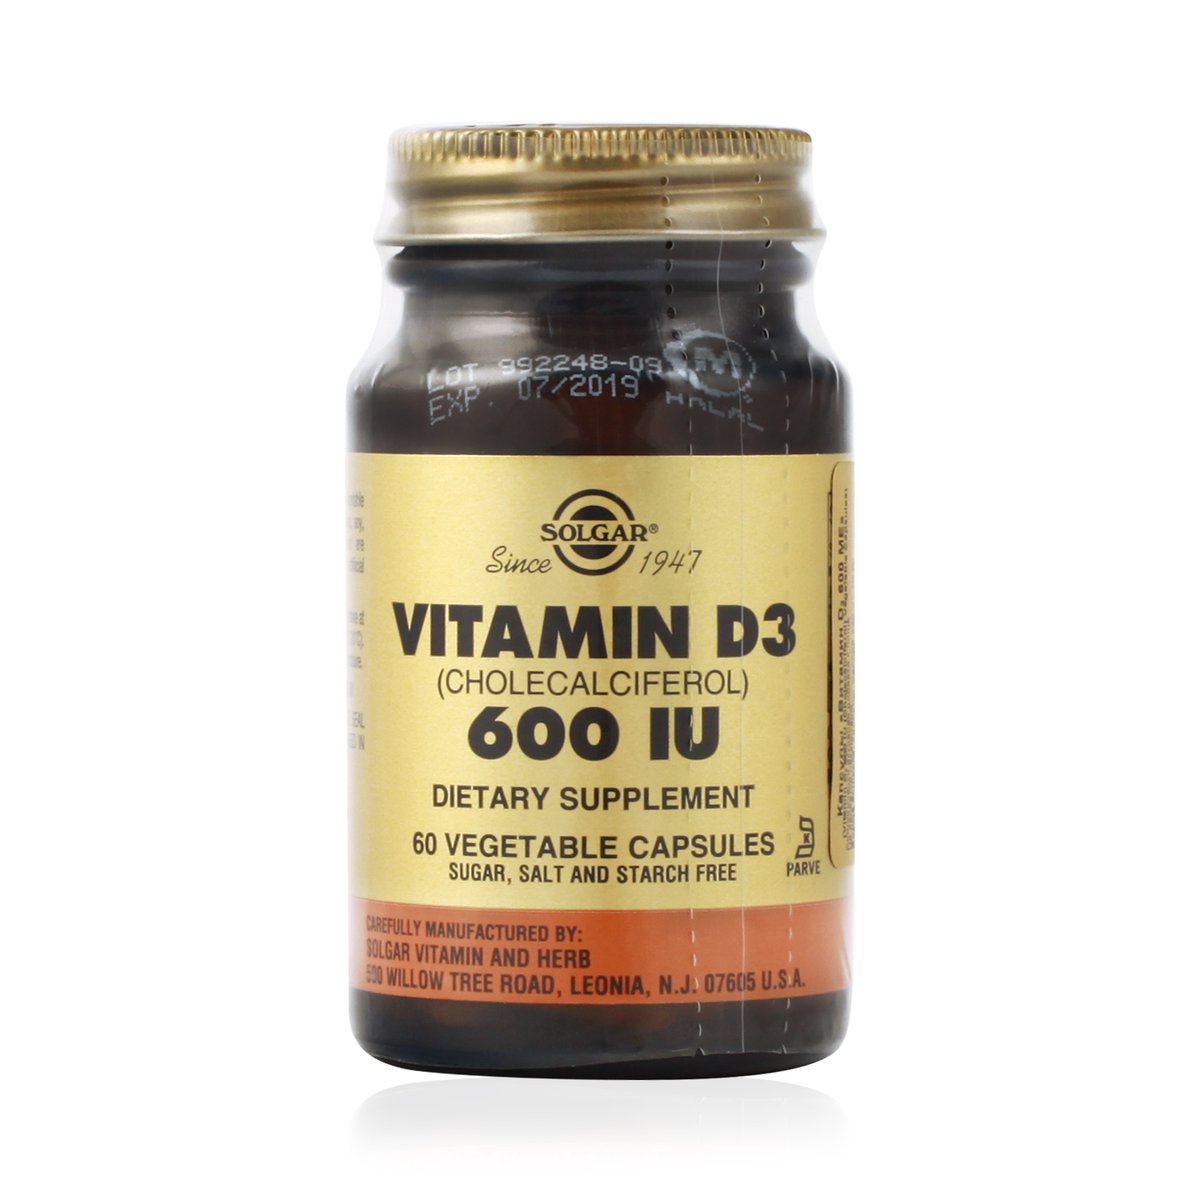 Витамин д3 для волос